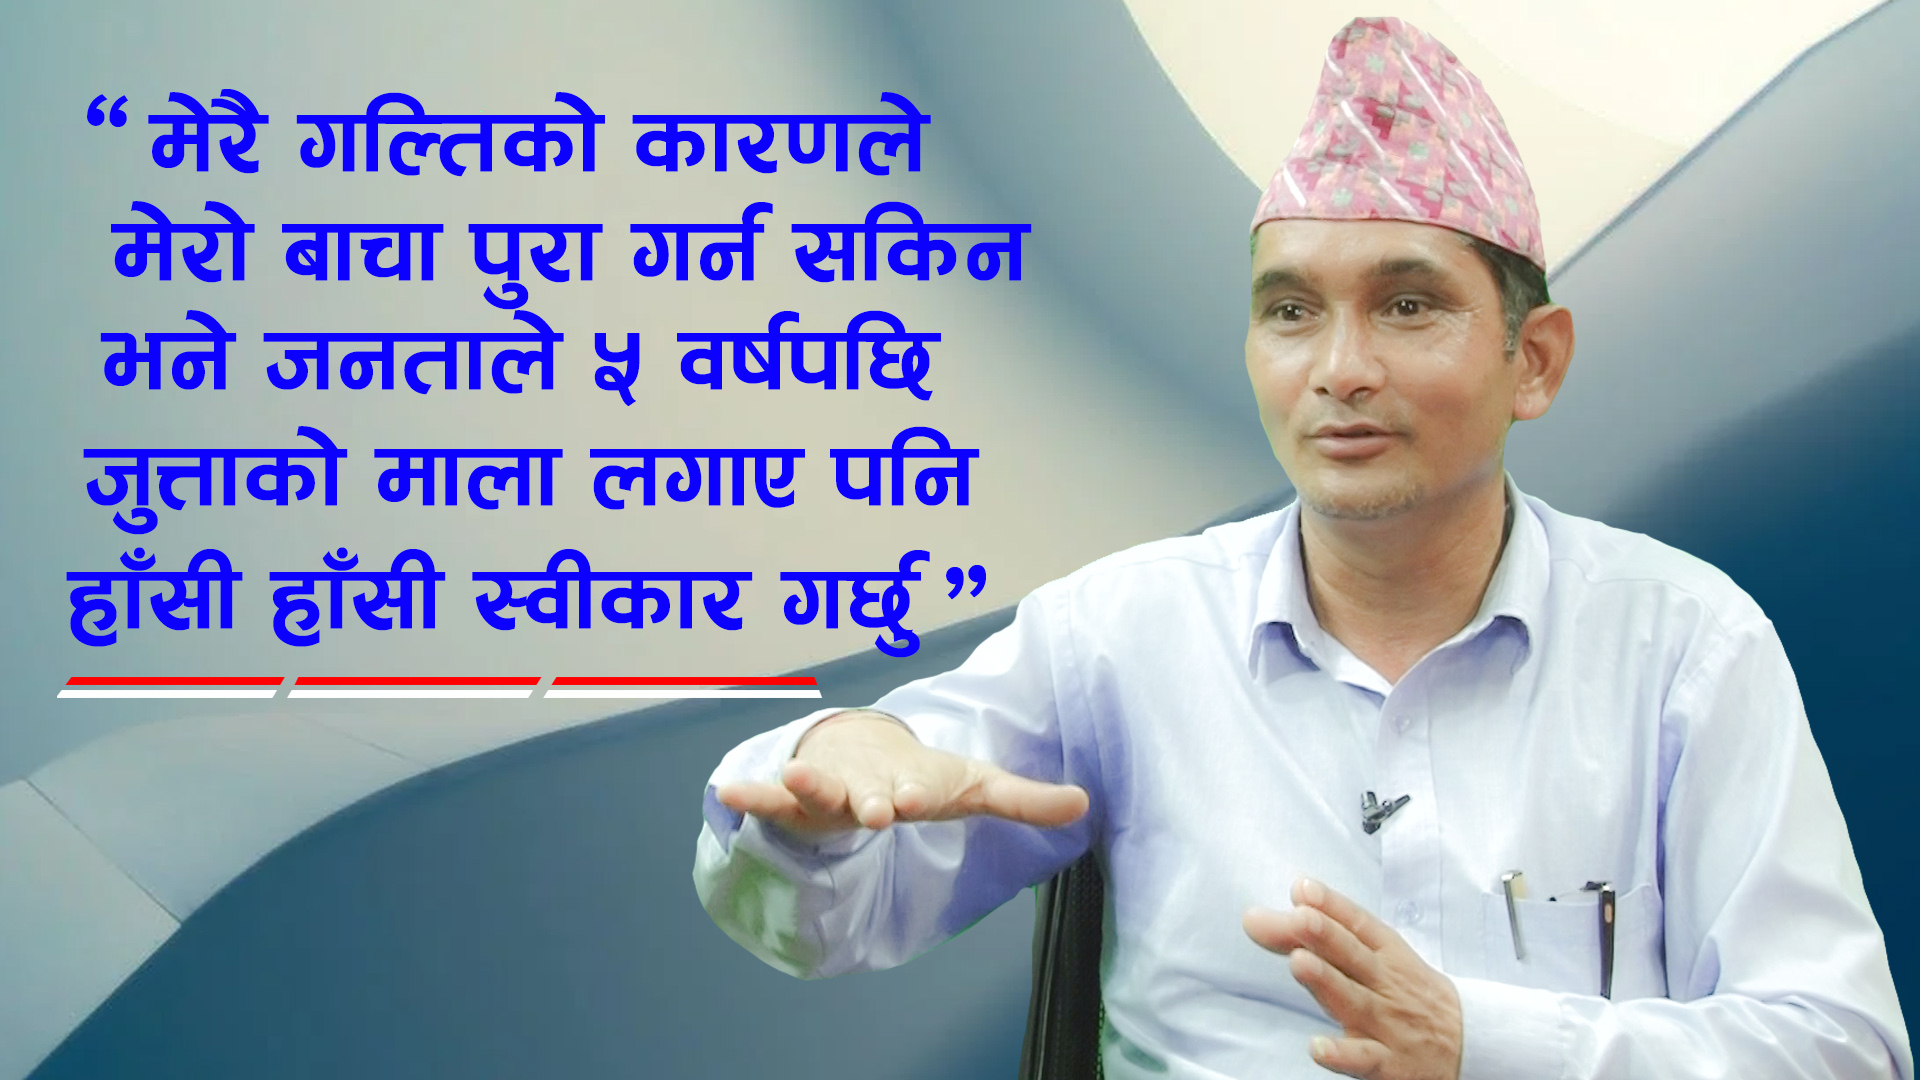 Netizen Nepal